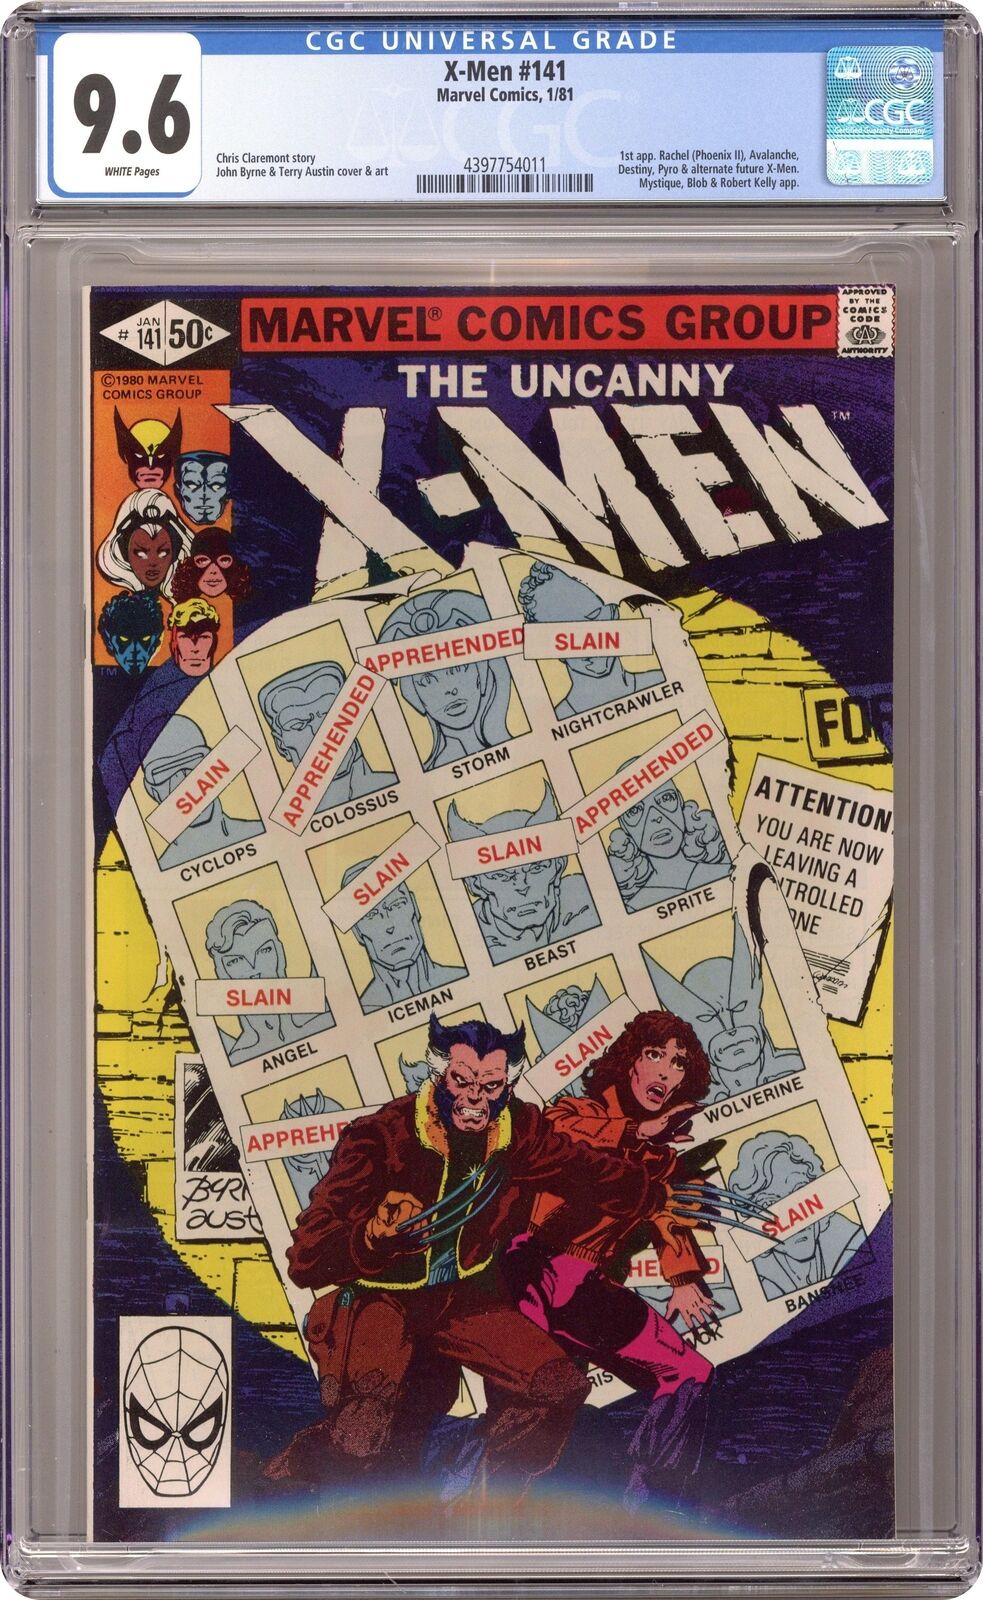 Uncanny X-Men #141D Direct Variant CGC 9.6 1981 4397754011 1st Rachel Summers